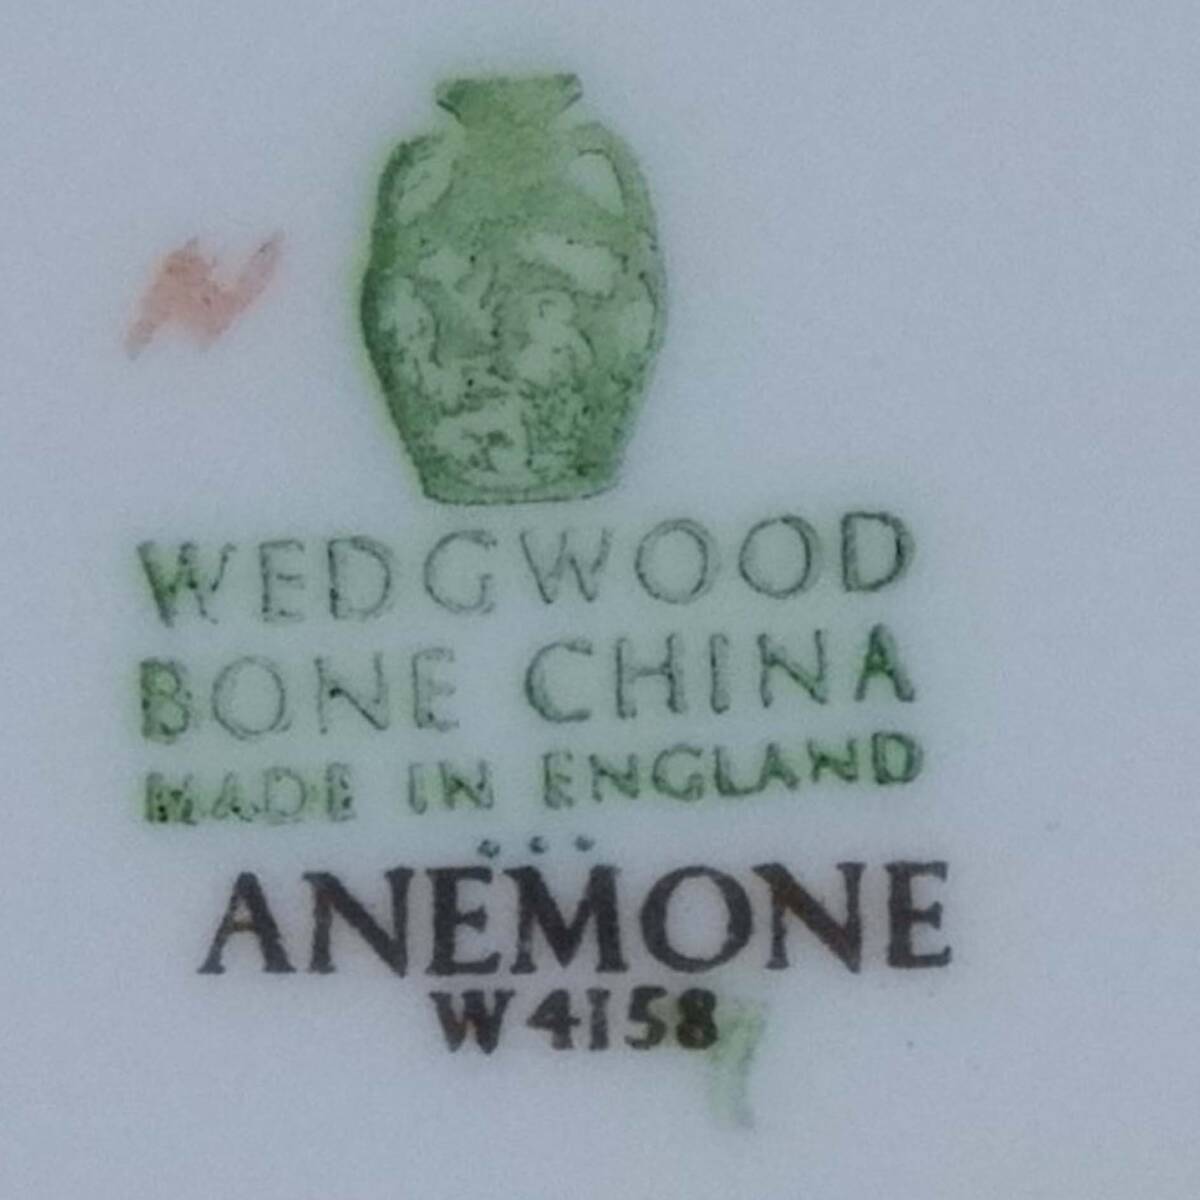 レア! ウェッジウッド アネモネ ケーキプレート 15cm Anemone W4158 Wedgwood 緑壺 廃盤_画像7